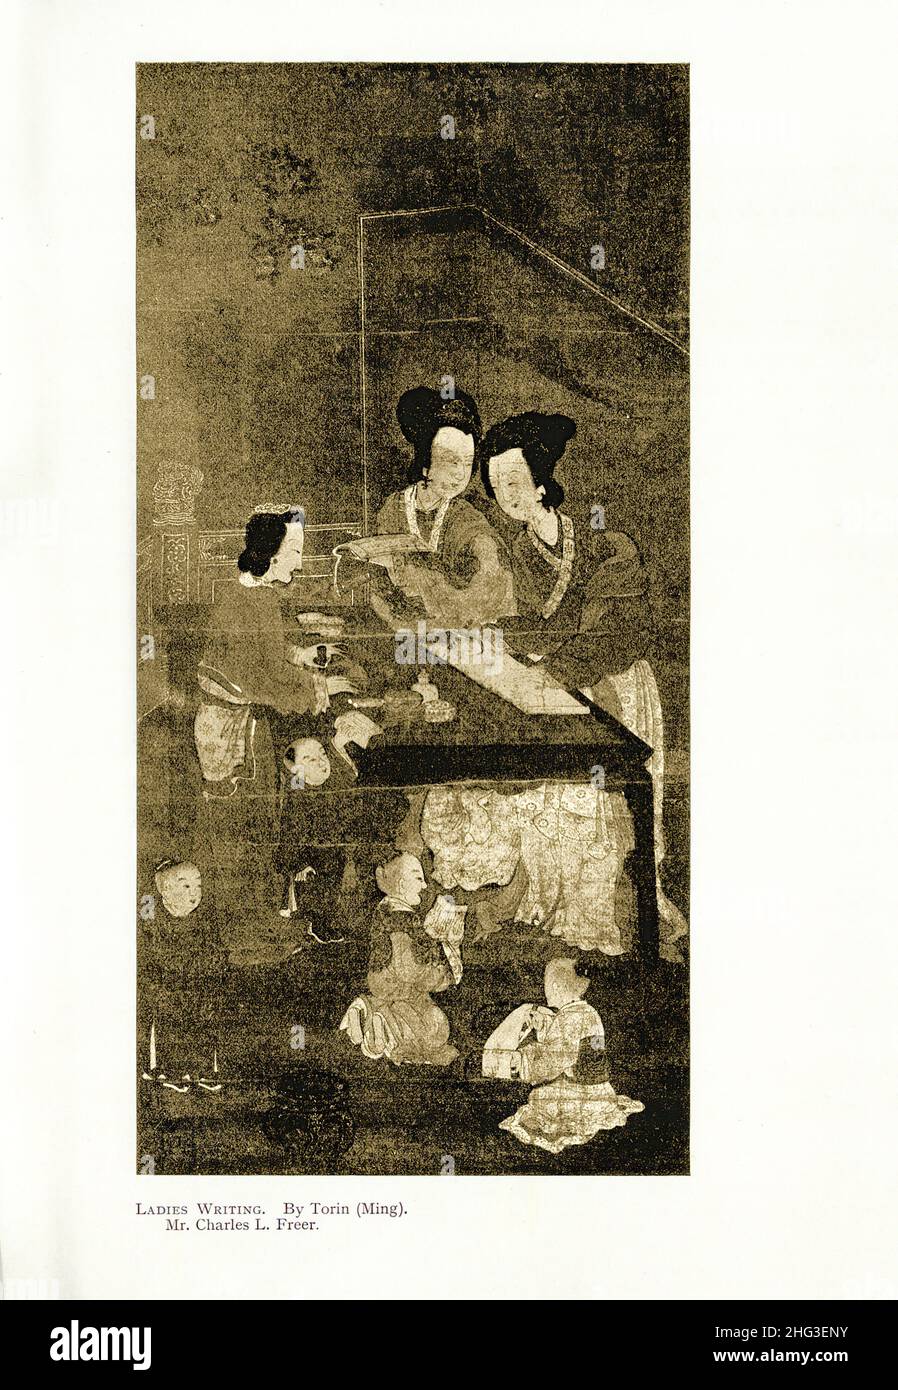 Pintura medieval china: La escritura de las señoras. Por Torin (Ming). Reproducción de la ilustración del libro de 1912 Foto de stock